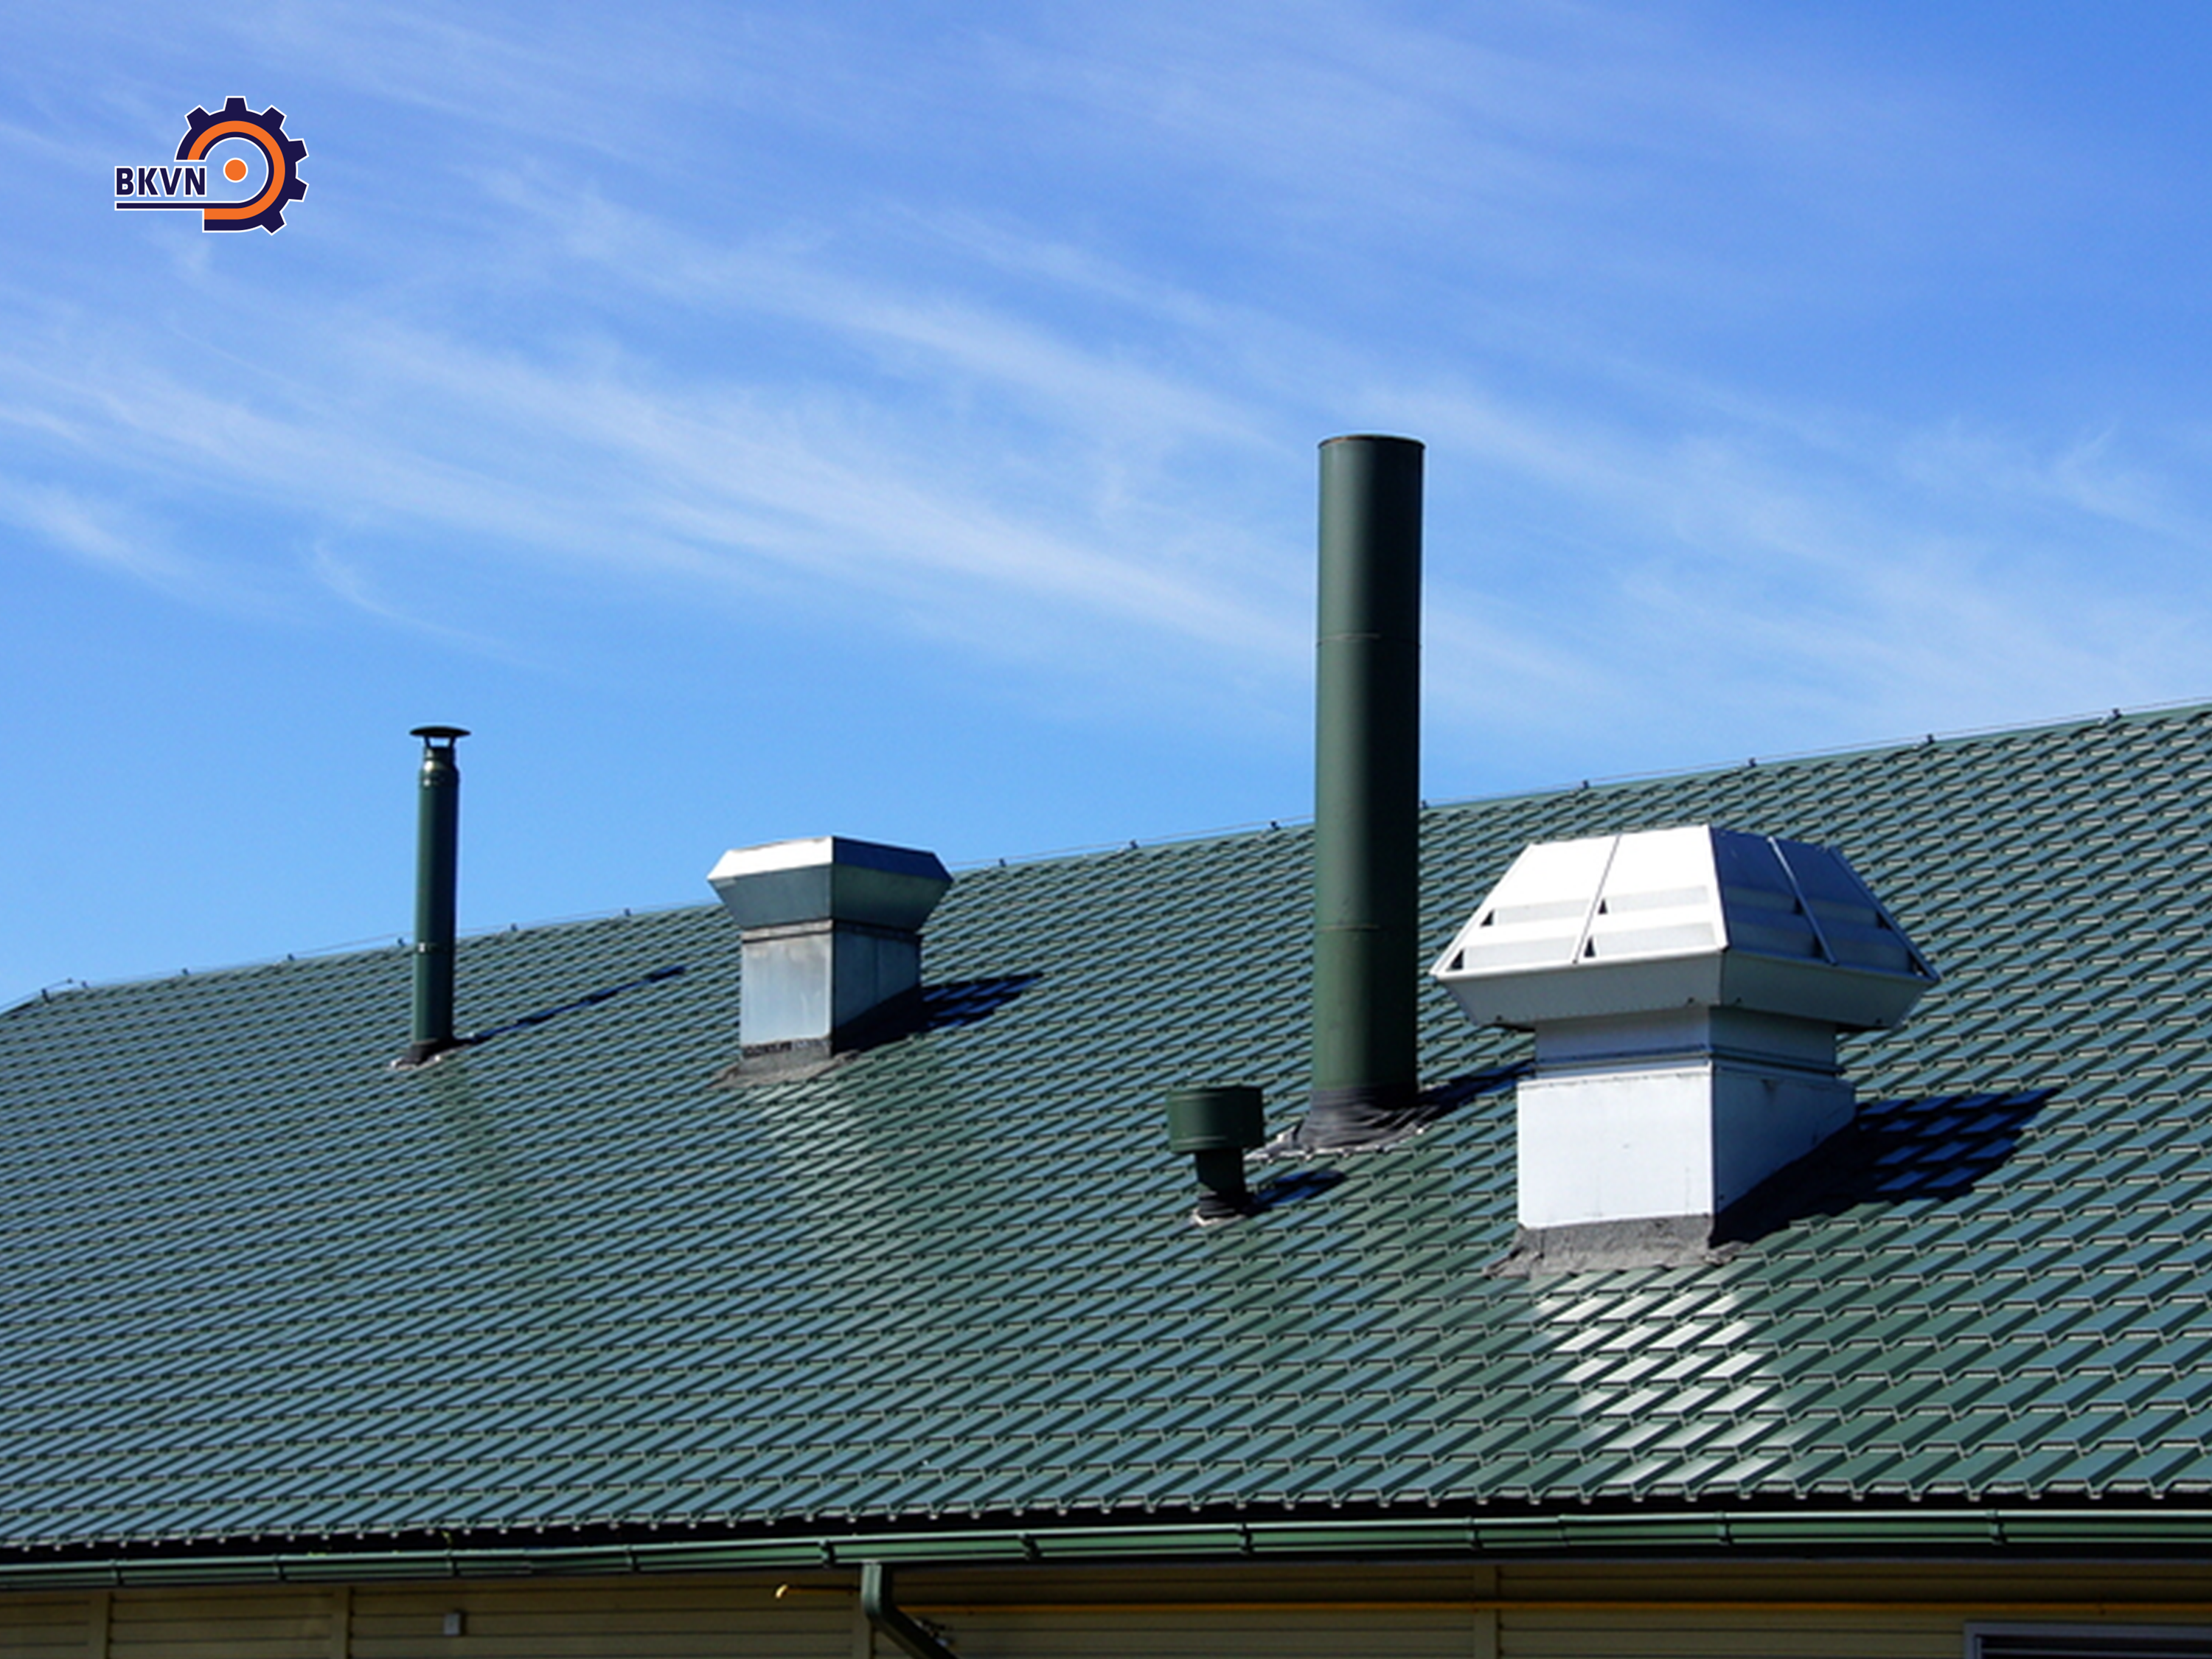 Ống thông gió được lắp đặt trên mái nhà